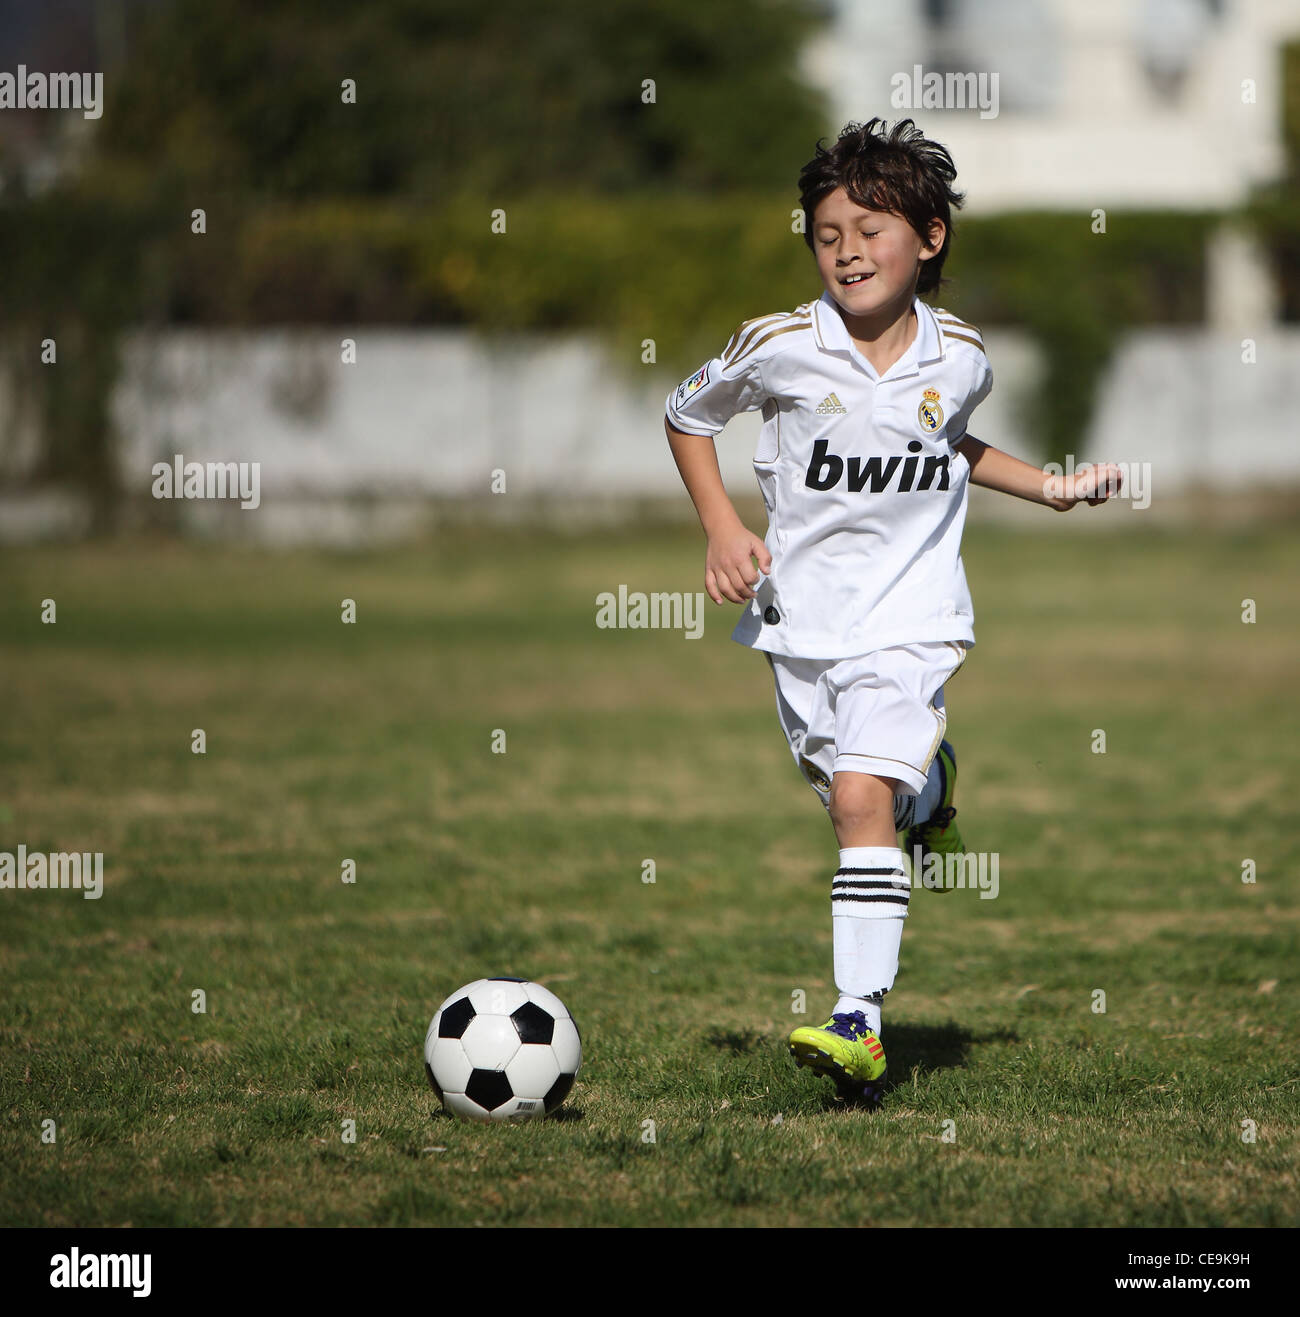 Kleiner Junge gekleidet in Real Madrid einheitliche Vorgehensweisen Fußball für eine Jugendmannschaft in Südkalifornien.  Fußball wird immer beliebter. Stockfoto